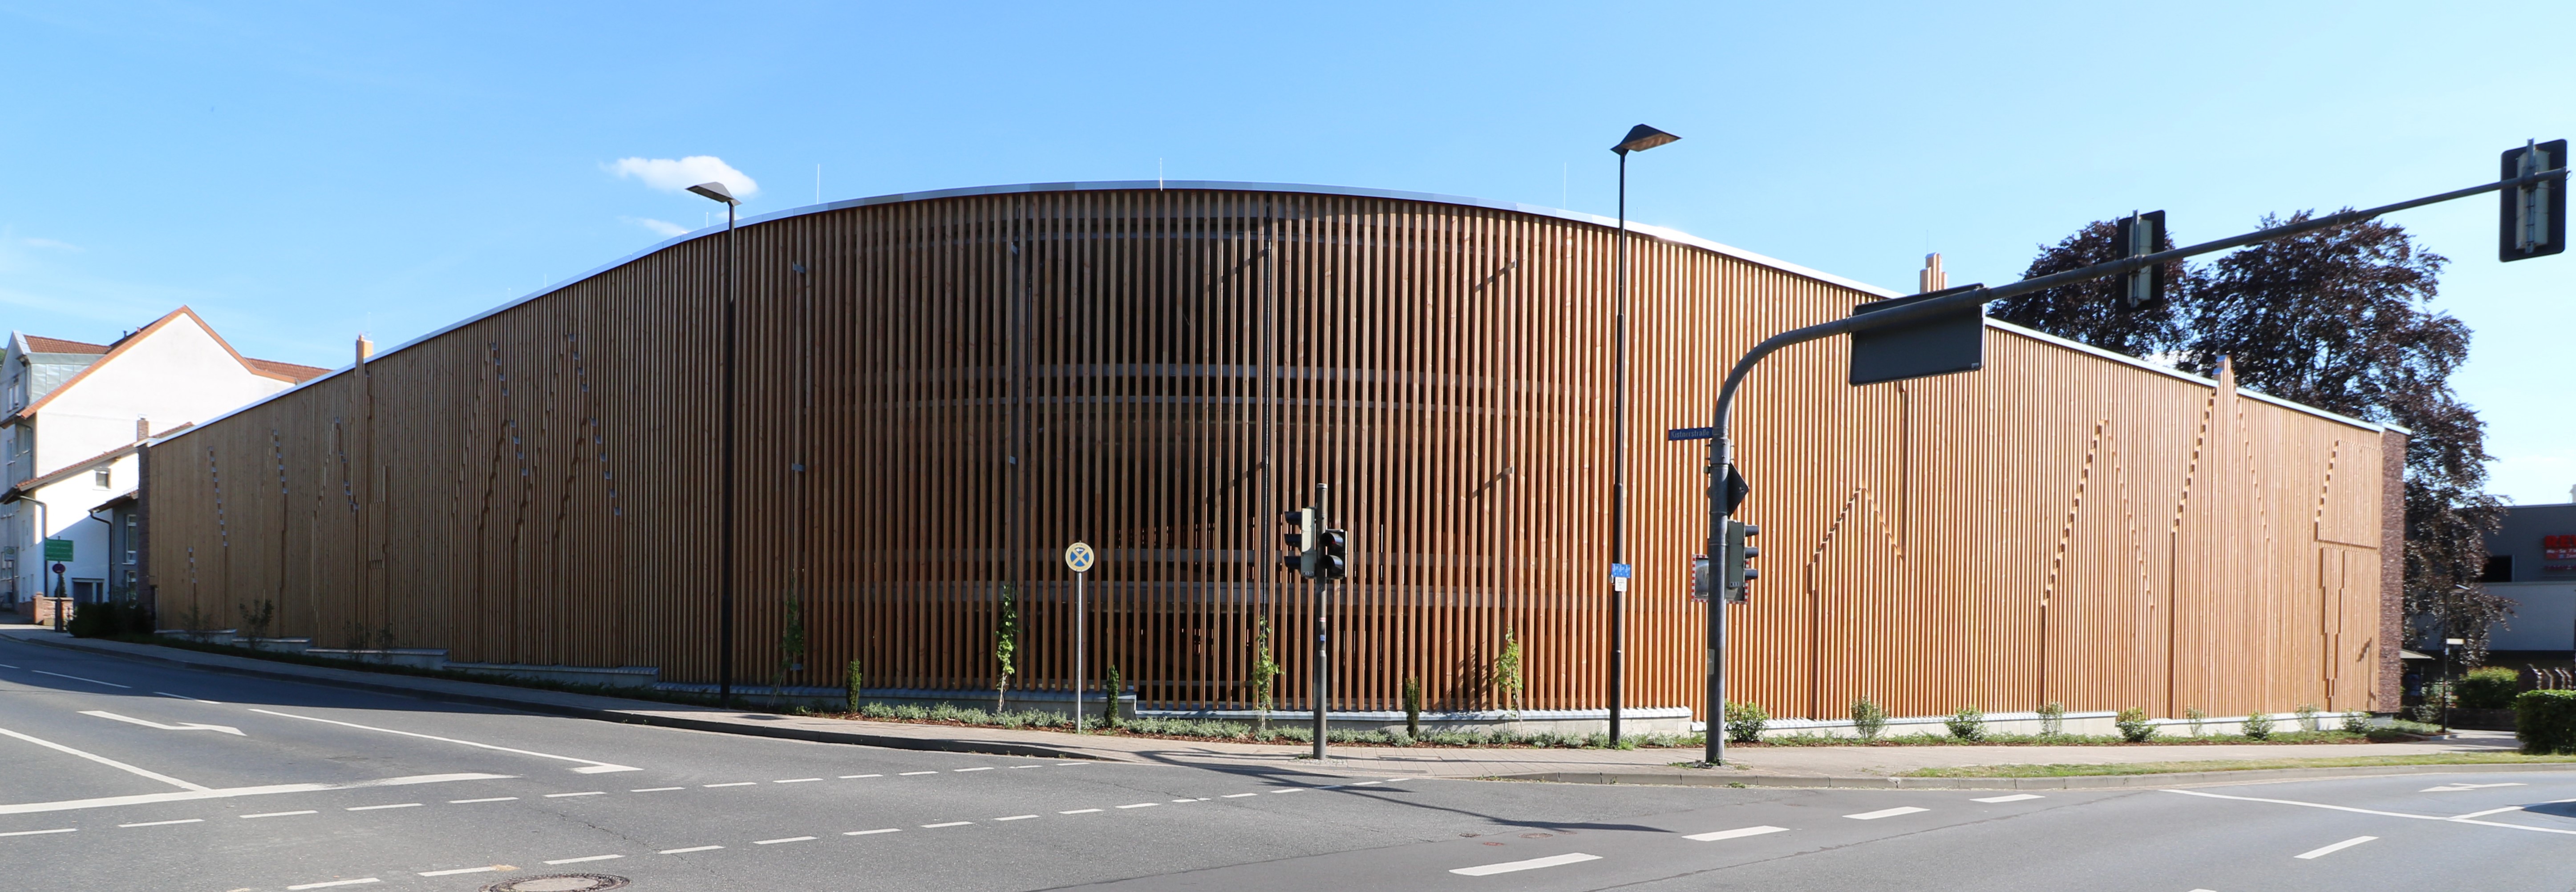 Parkhaus der Stadtwerke Mosbach gebaut von Schreiber Stahlbau wird eröffnet